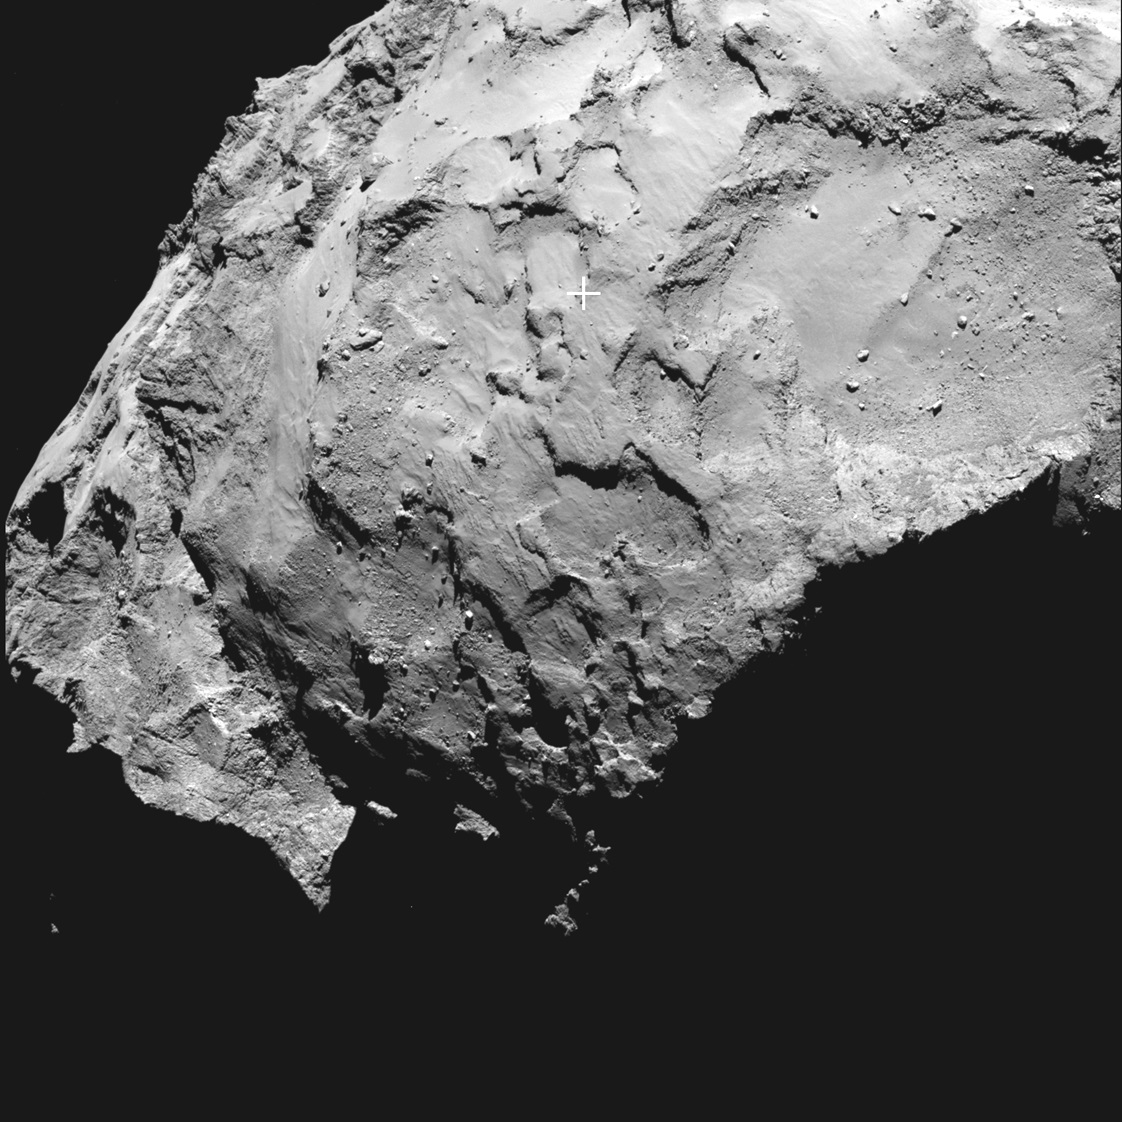 ЕКА избра мястото за кацане върху комета